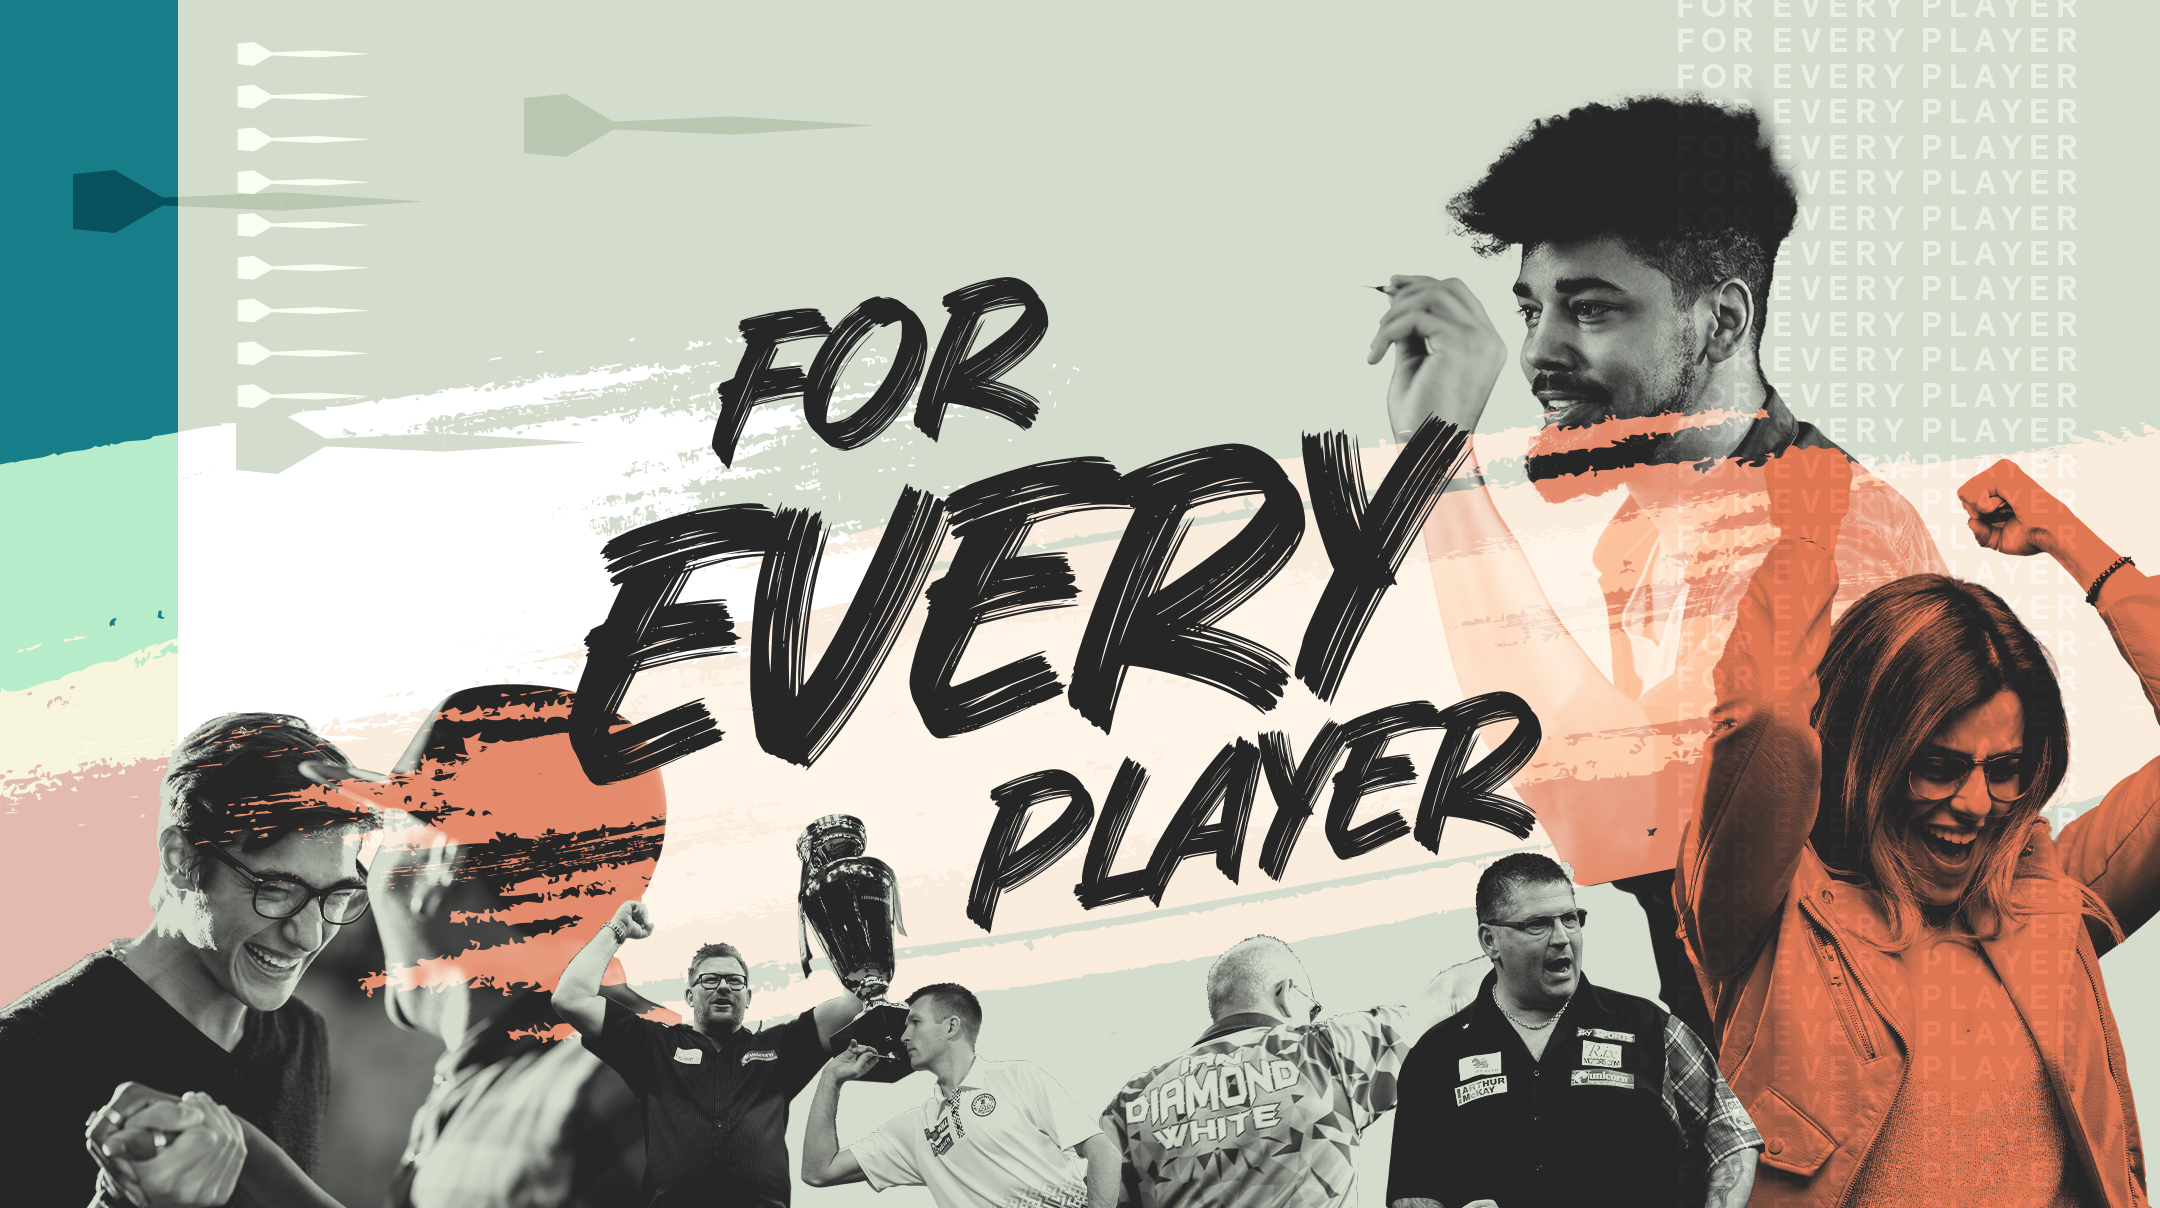 Homepage - Unicorn Darts - For Every Player | Dartscheiben